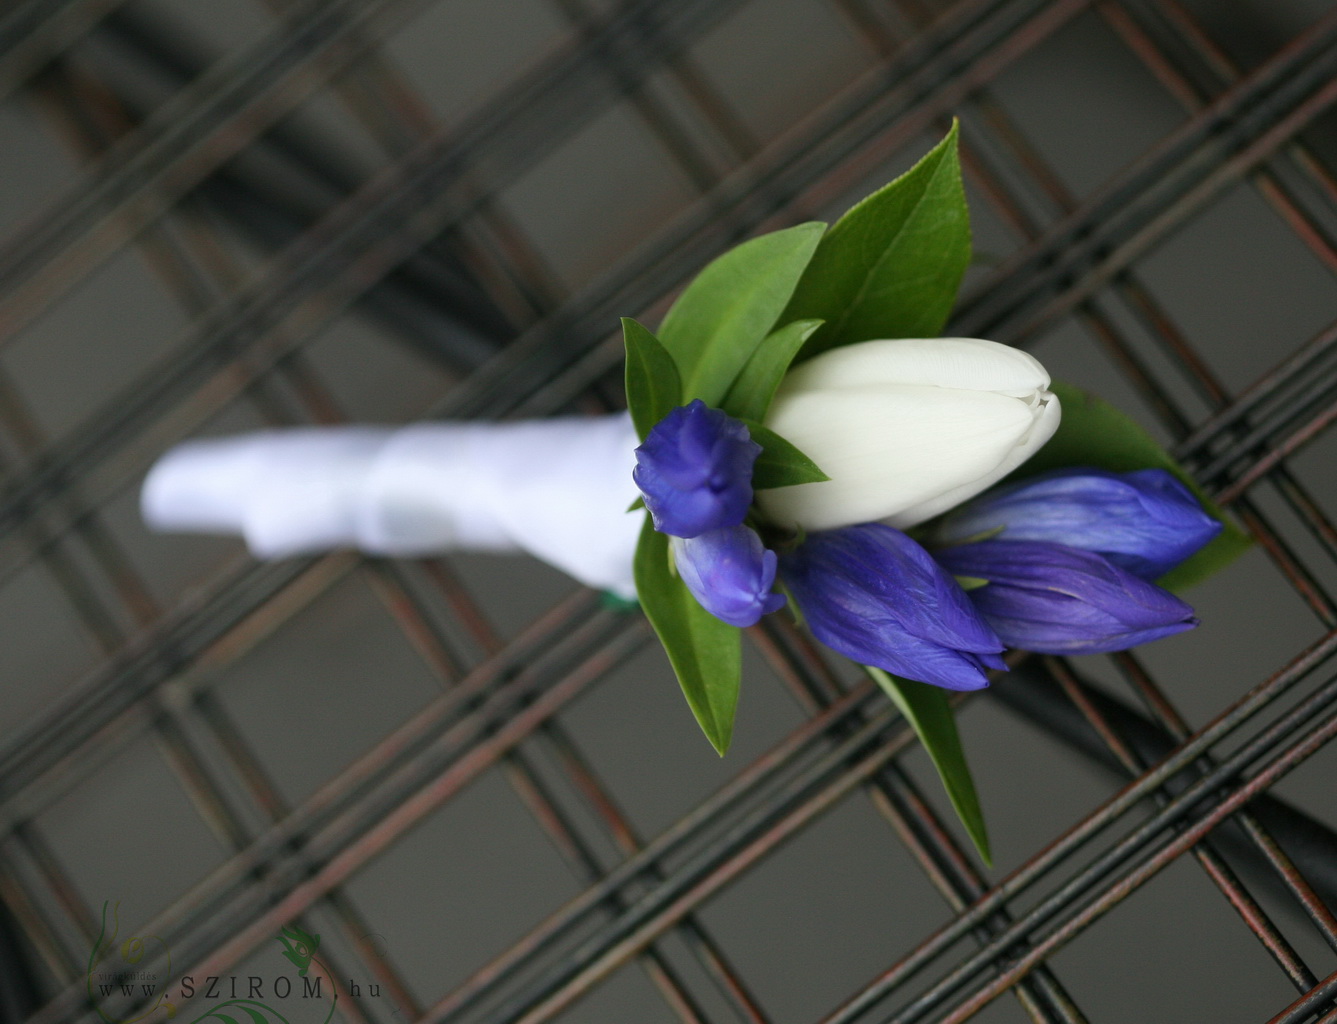 Virágküldés Budapest - Vőlegény kitűző (tulipán, enciánnal (kék, fehér)